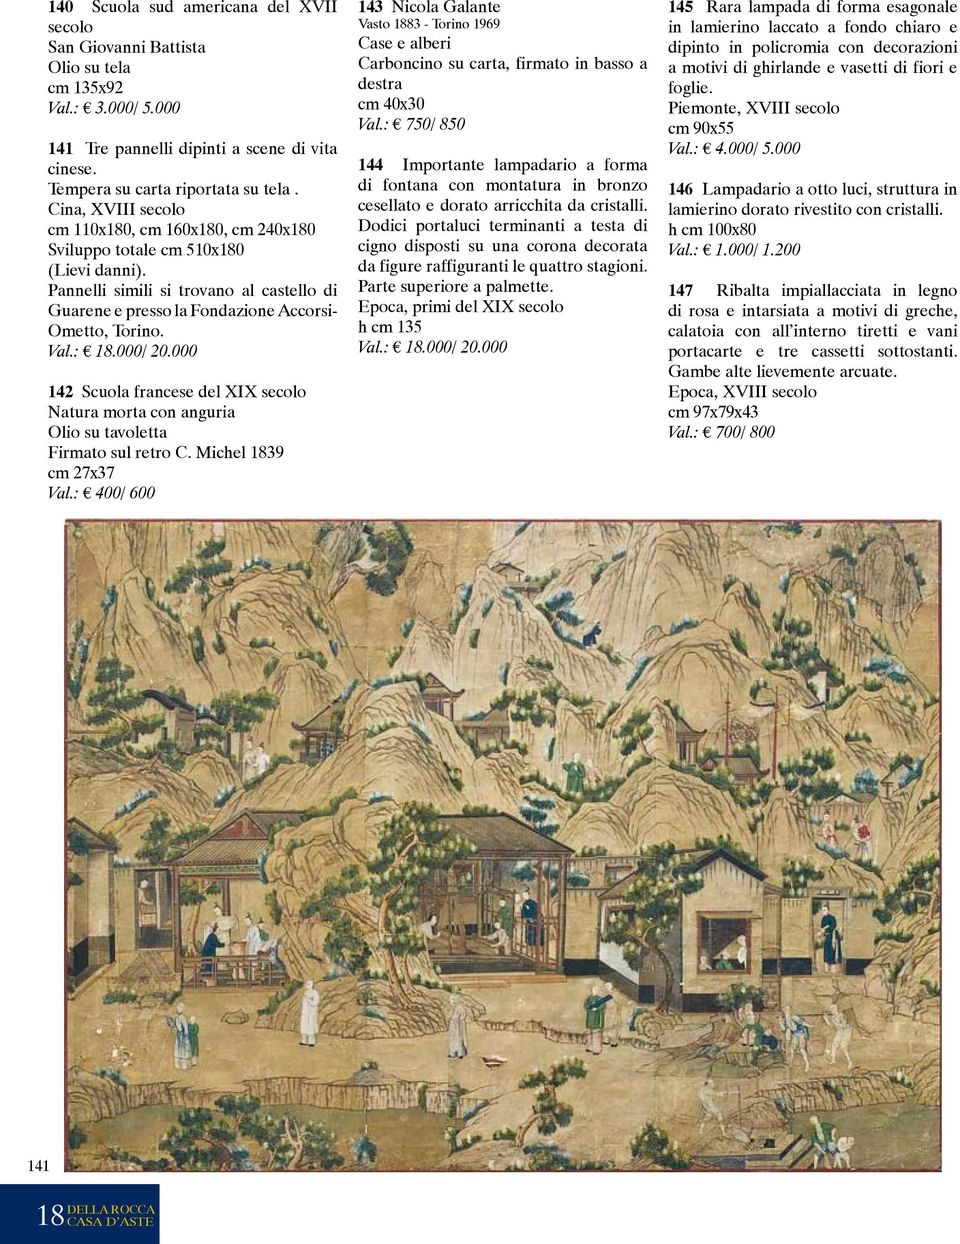 : 18.000/ 20.000 142 Scuola francese del XIX secolo Natura morta con anguria Olio su tavoletta Firmato sul retro C. Michel 1839 cm 27x37 Val.